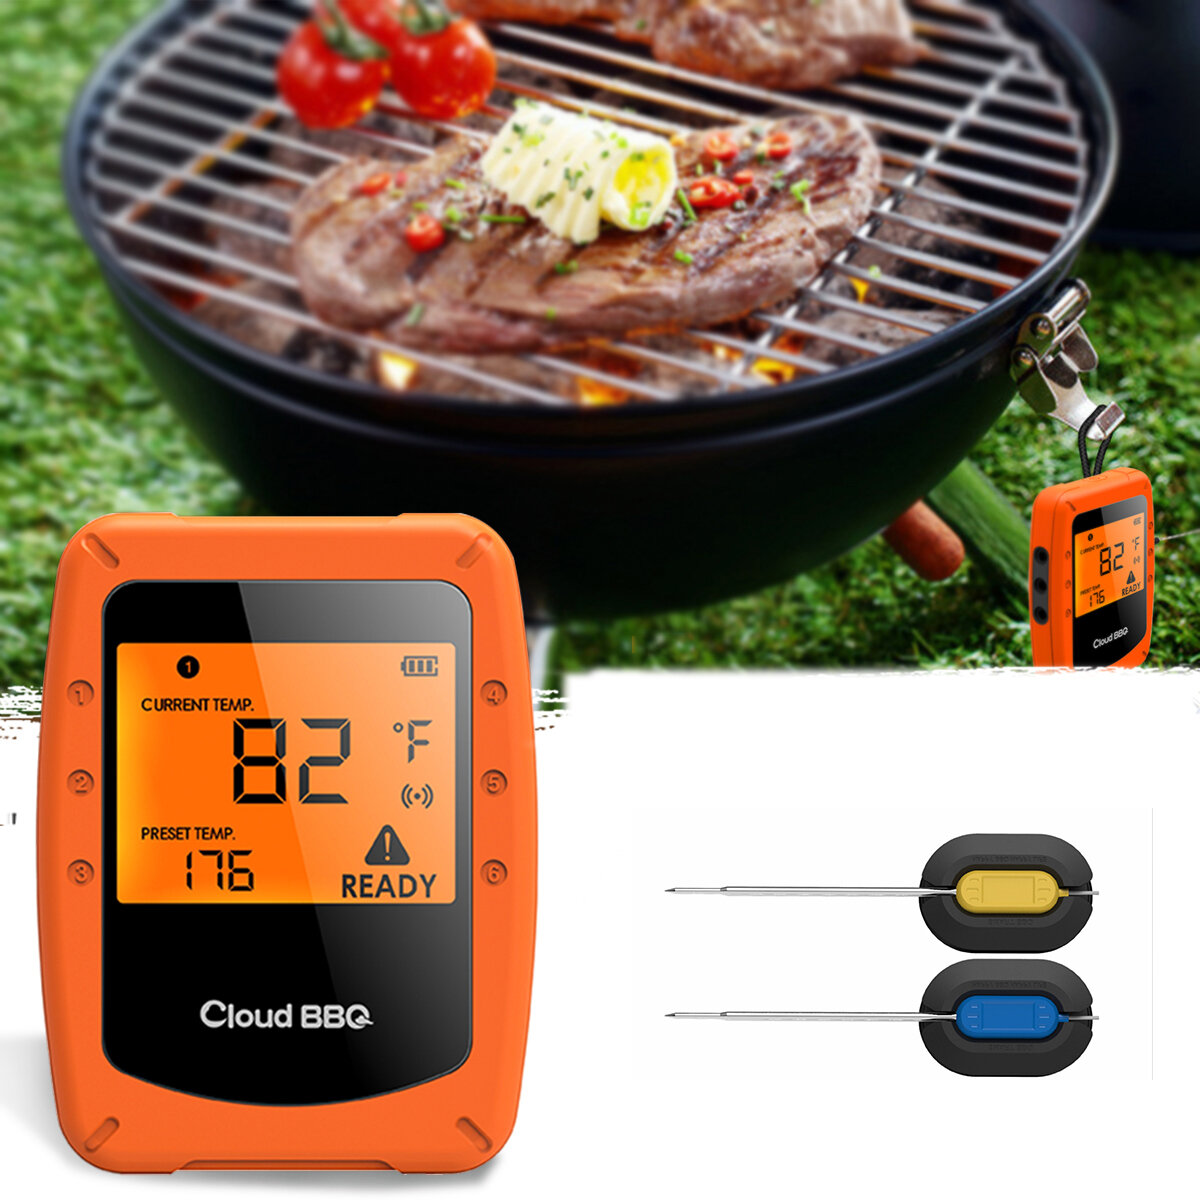 2 drahtlose intelligente BBQ-Thermometer für den Ofen, mit Bluetooth und Wifi für IOS und Android